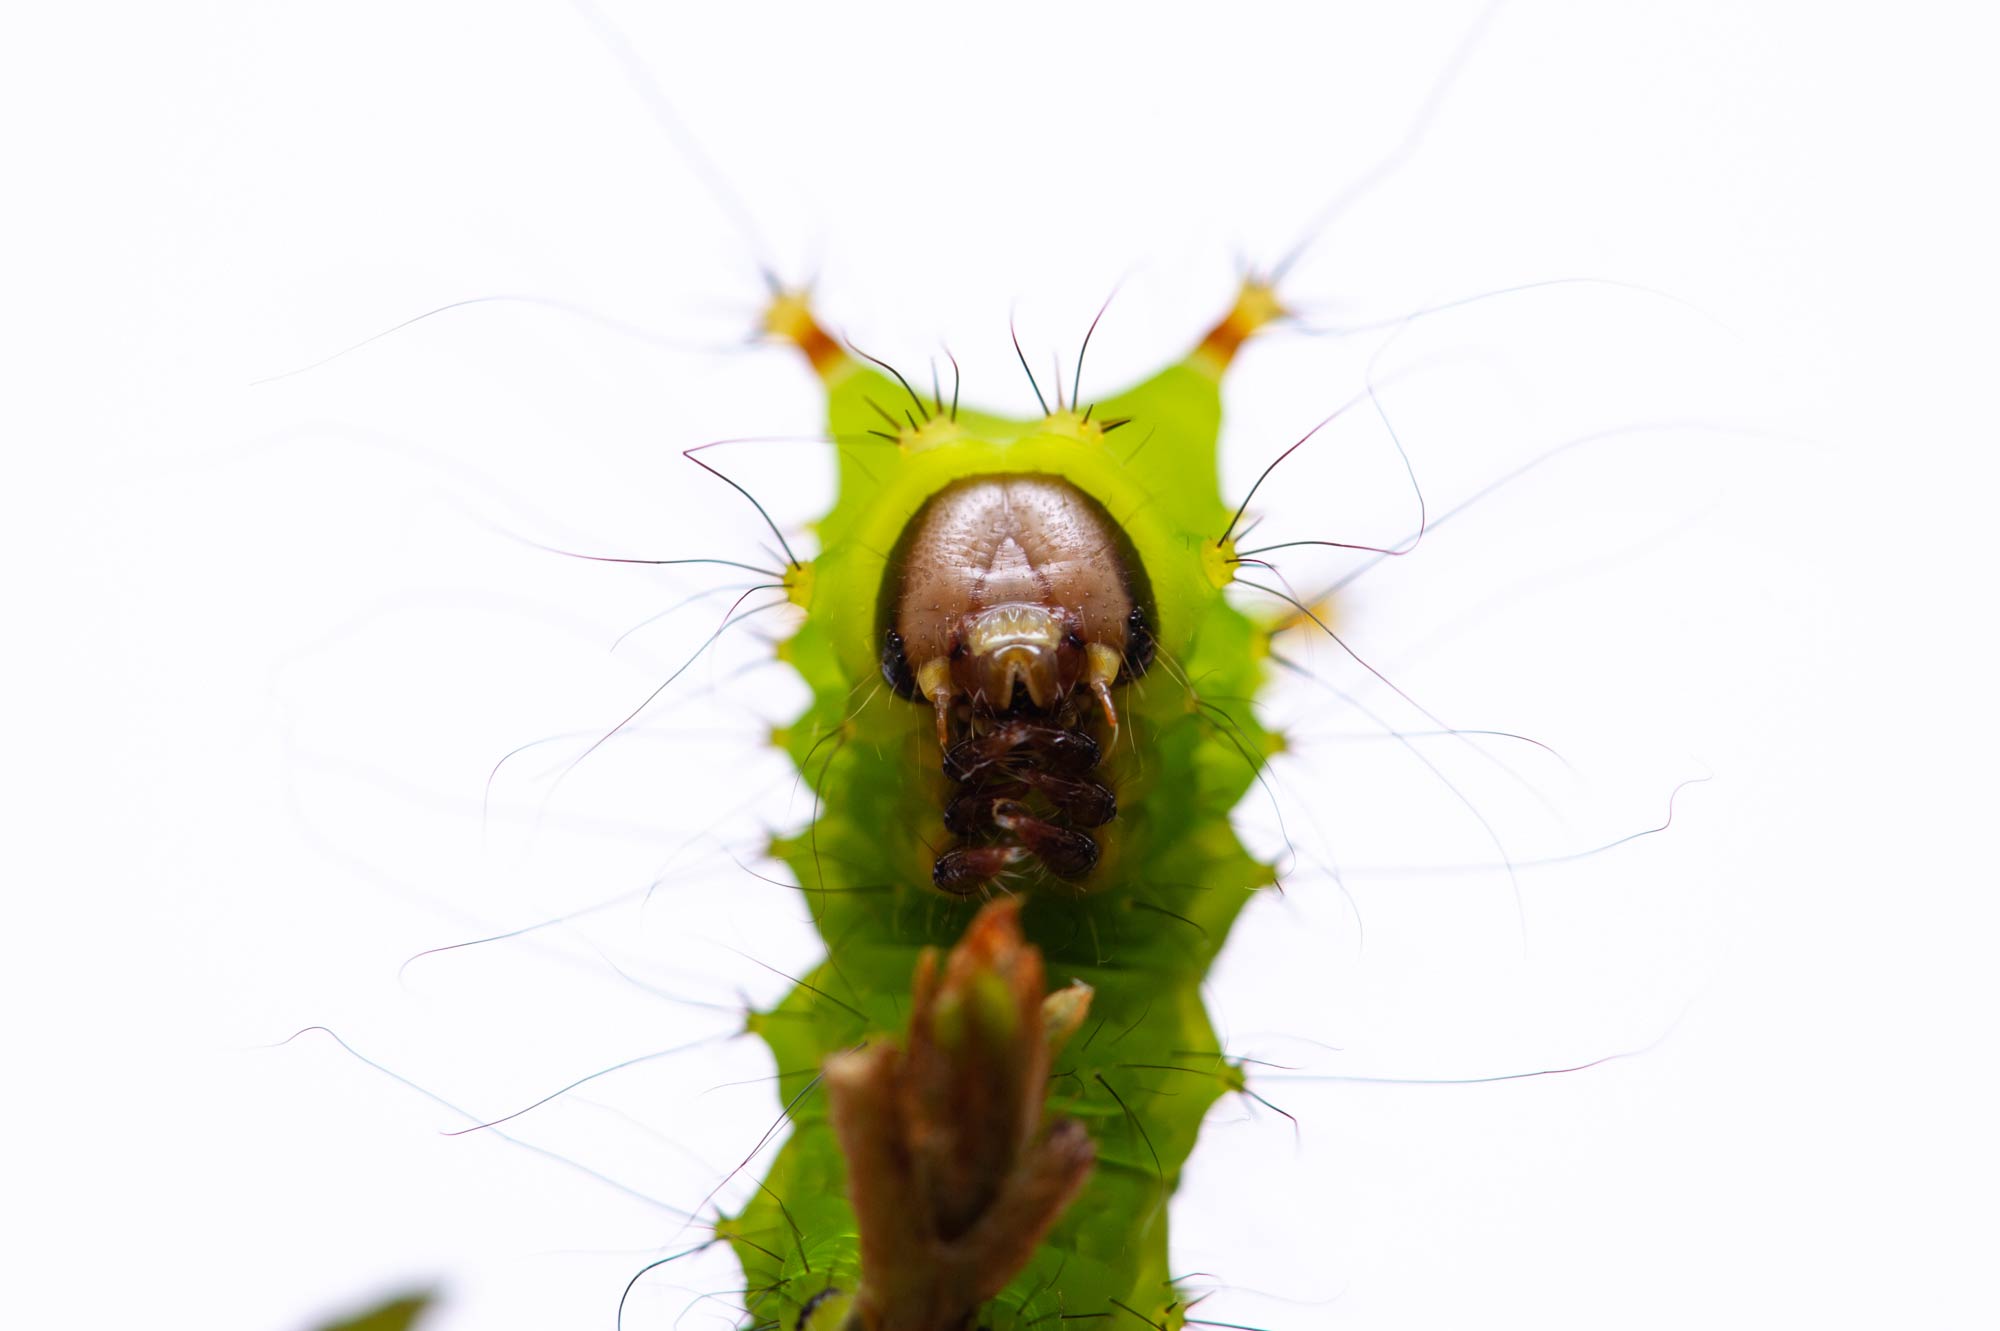 オオミズアオの特徴や見分け方 幼虫も写真で紹介 虫の写真と生態なら昆虫写真図鑑 ムシミル